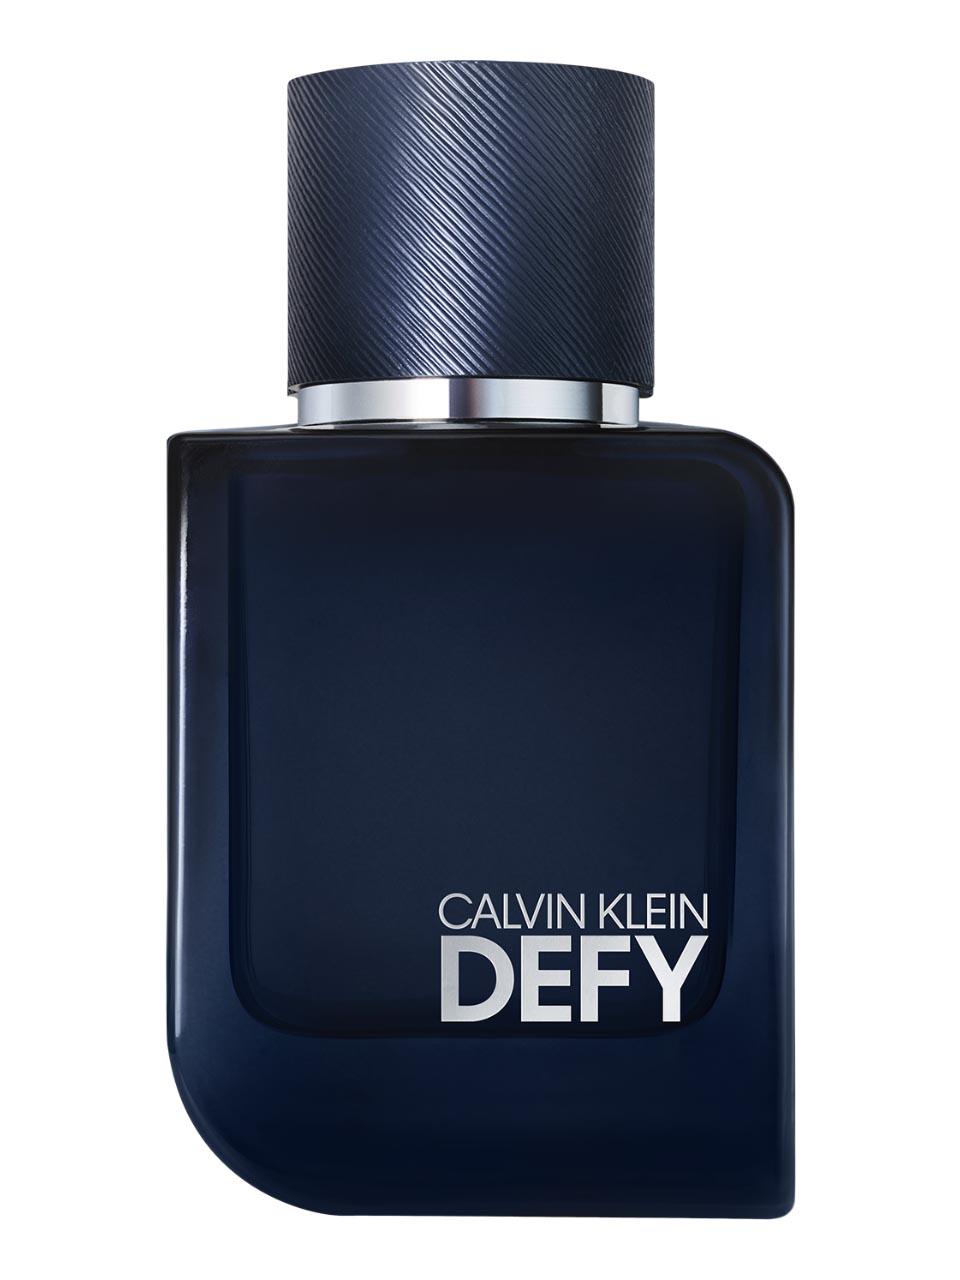 Calvin Klein Defy Parfum 50 ml  Frankfurt Airport Online Shopping